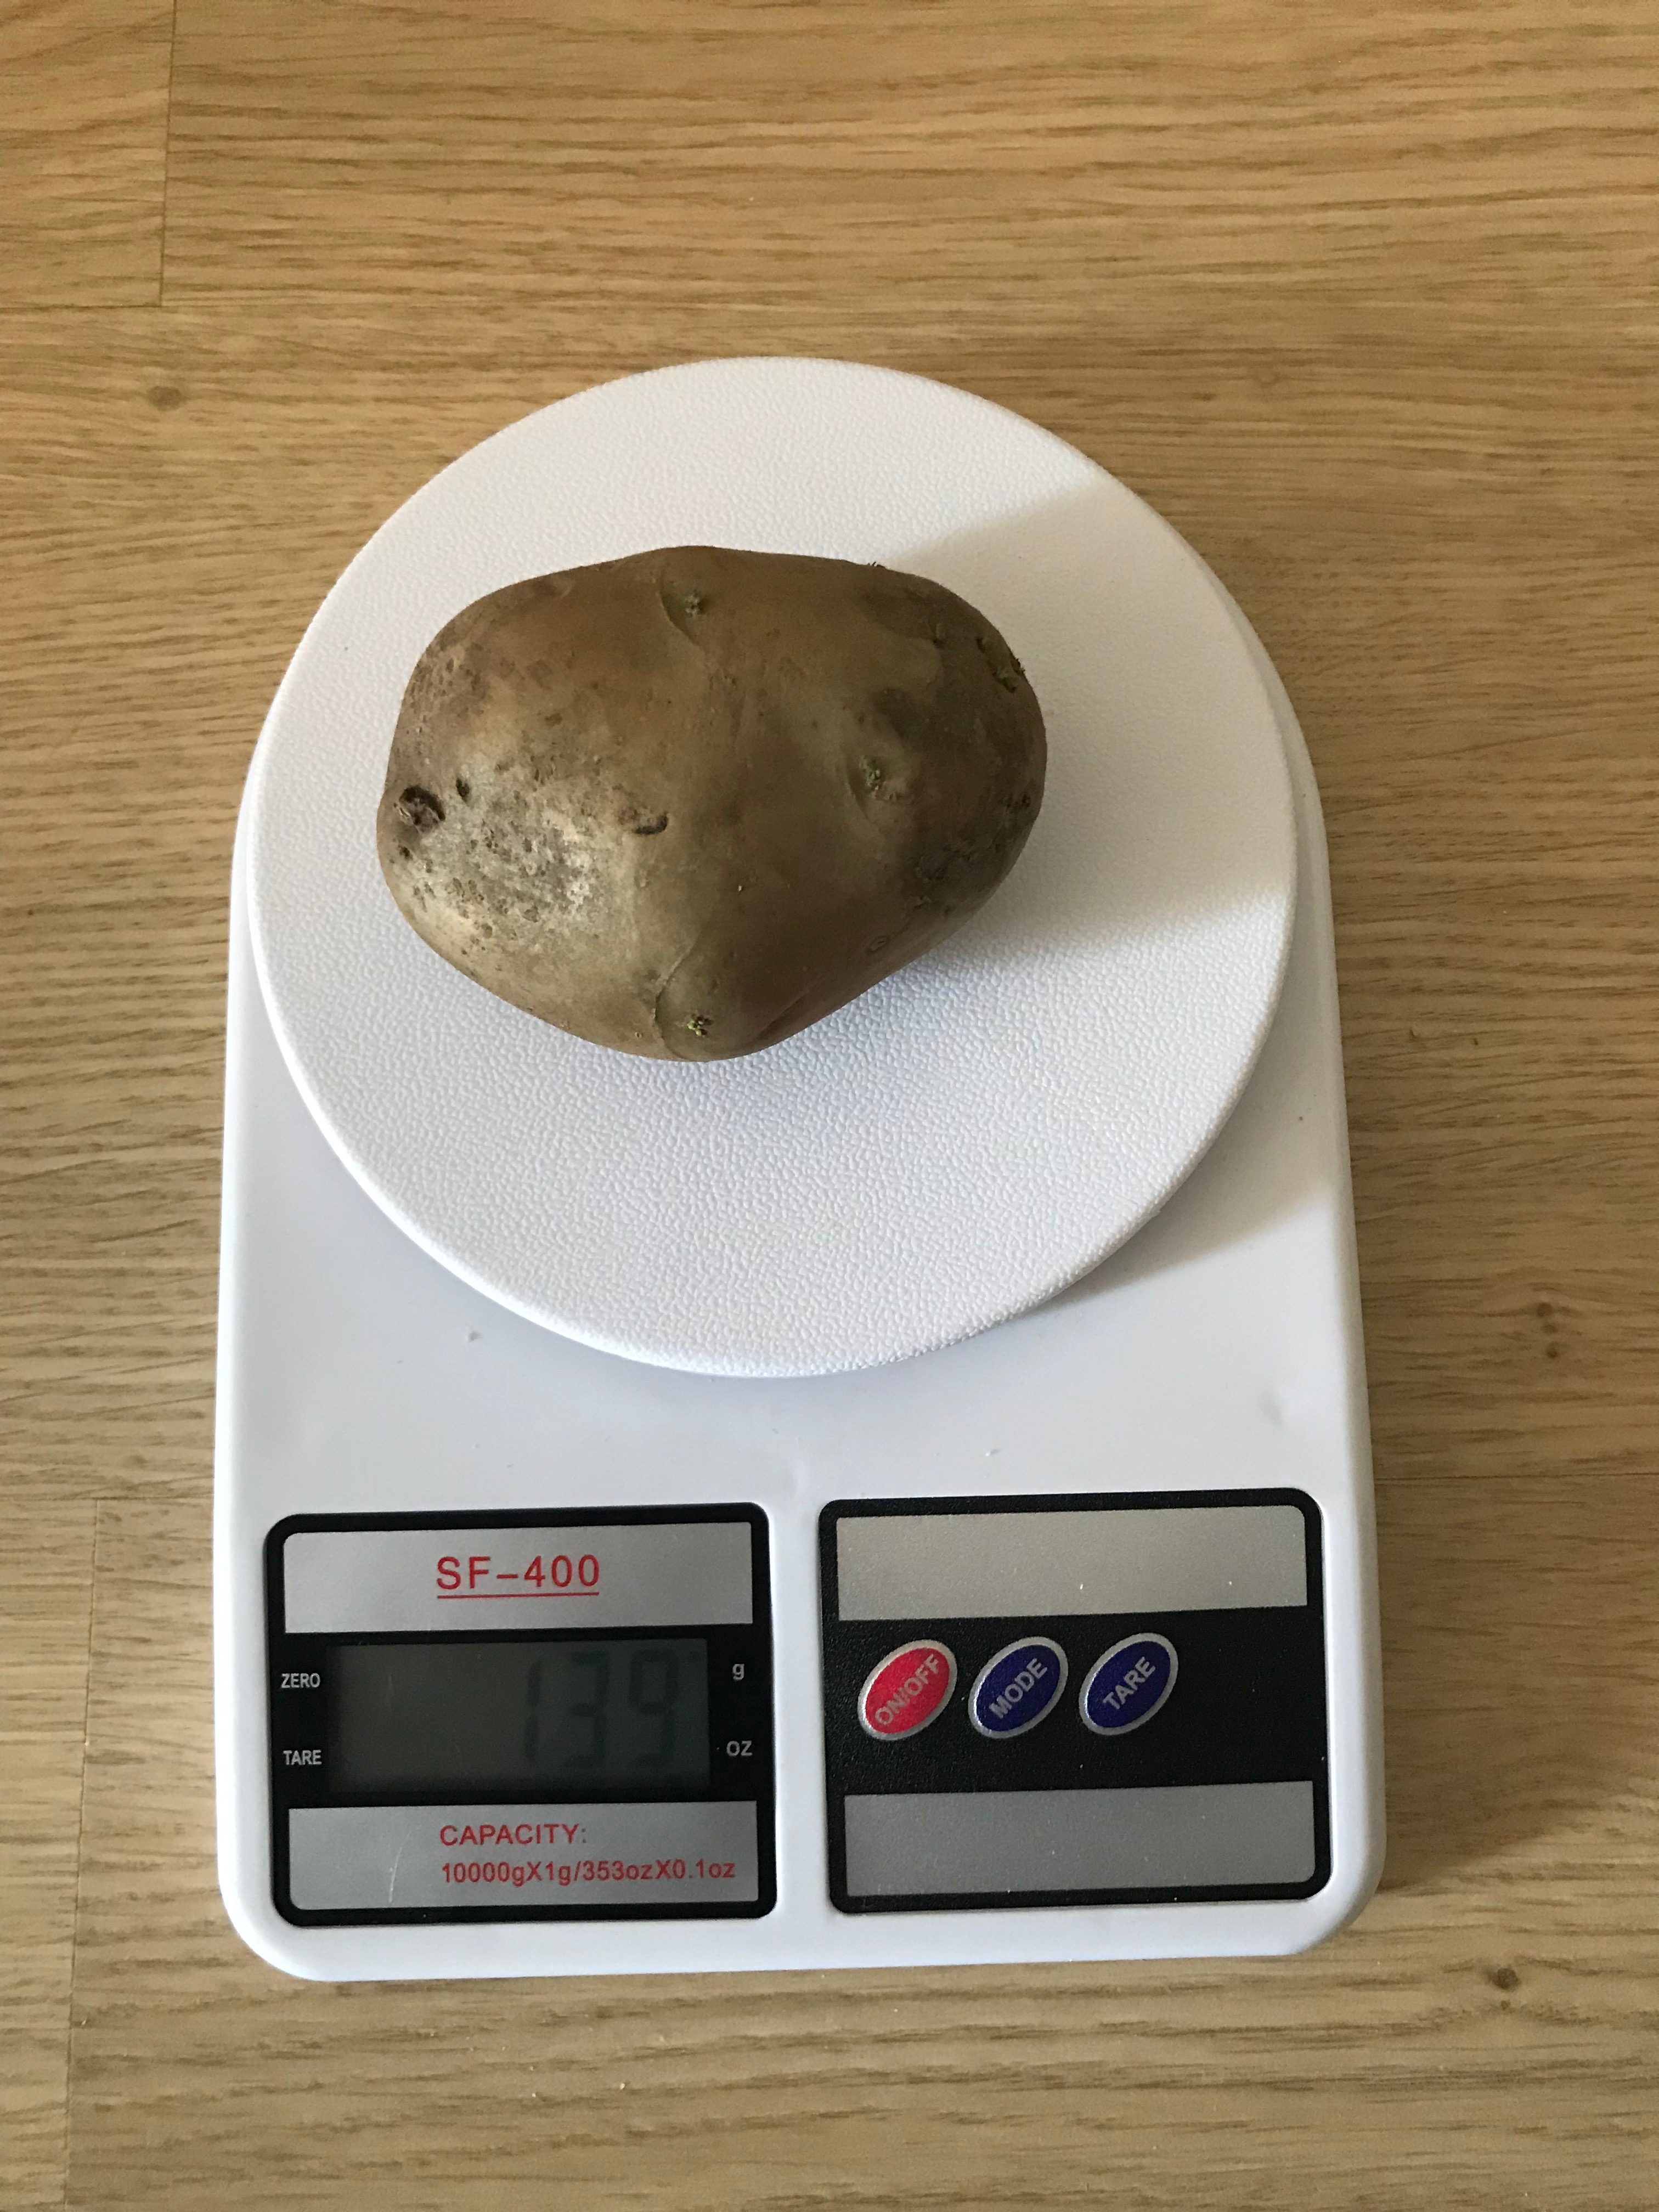 вага 1 середньої картоплі